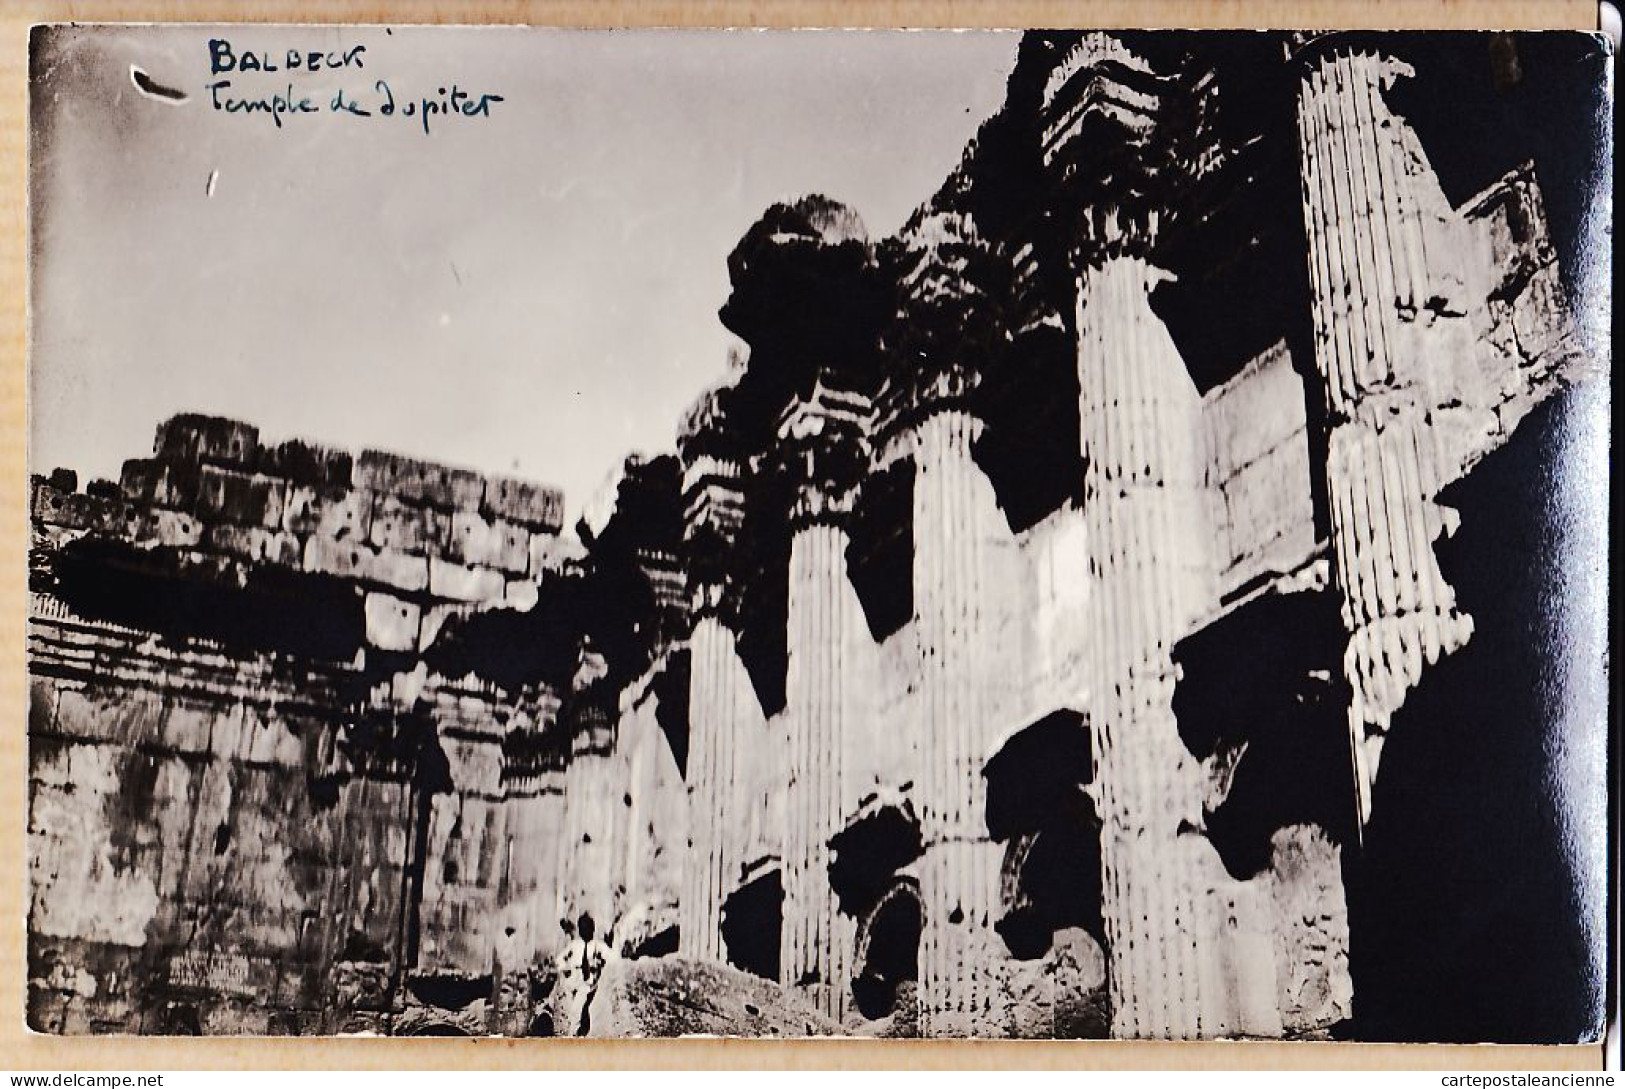 01814 / Rare Carte-Photo 1920s BALBECK Liban Temple De JUPITER Ruines Gréco-romaines-Lebanon Baalbek - Libanon